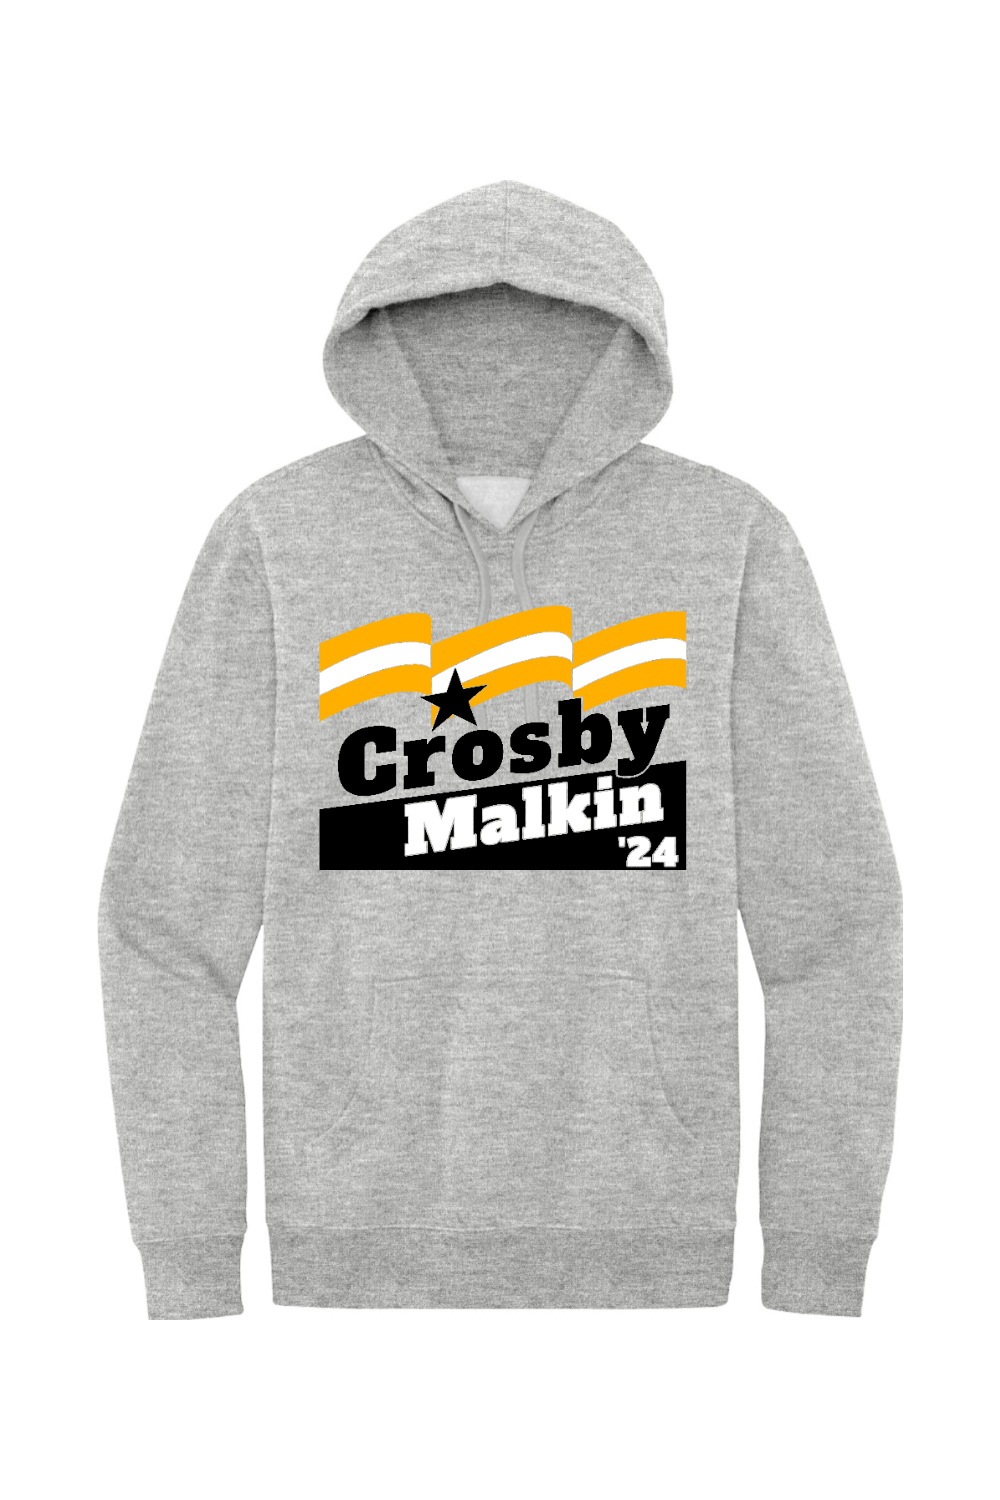 Crosby Malkin '24 - Fleece Hoodie - Yinzylvania